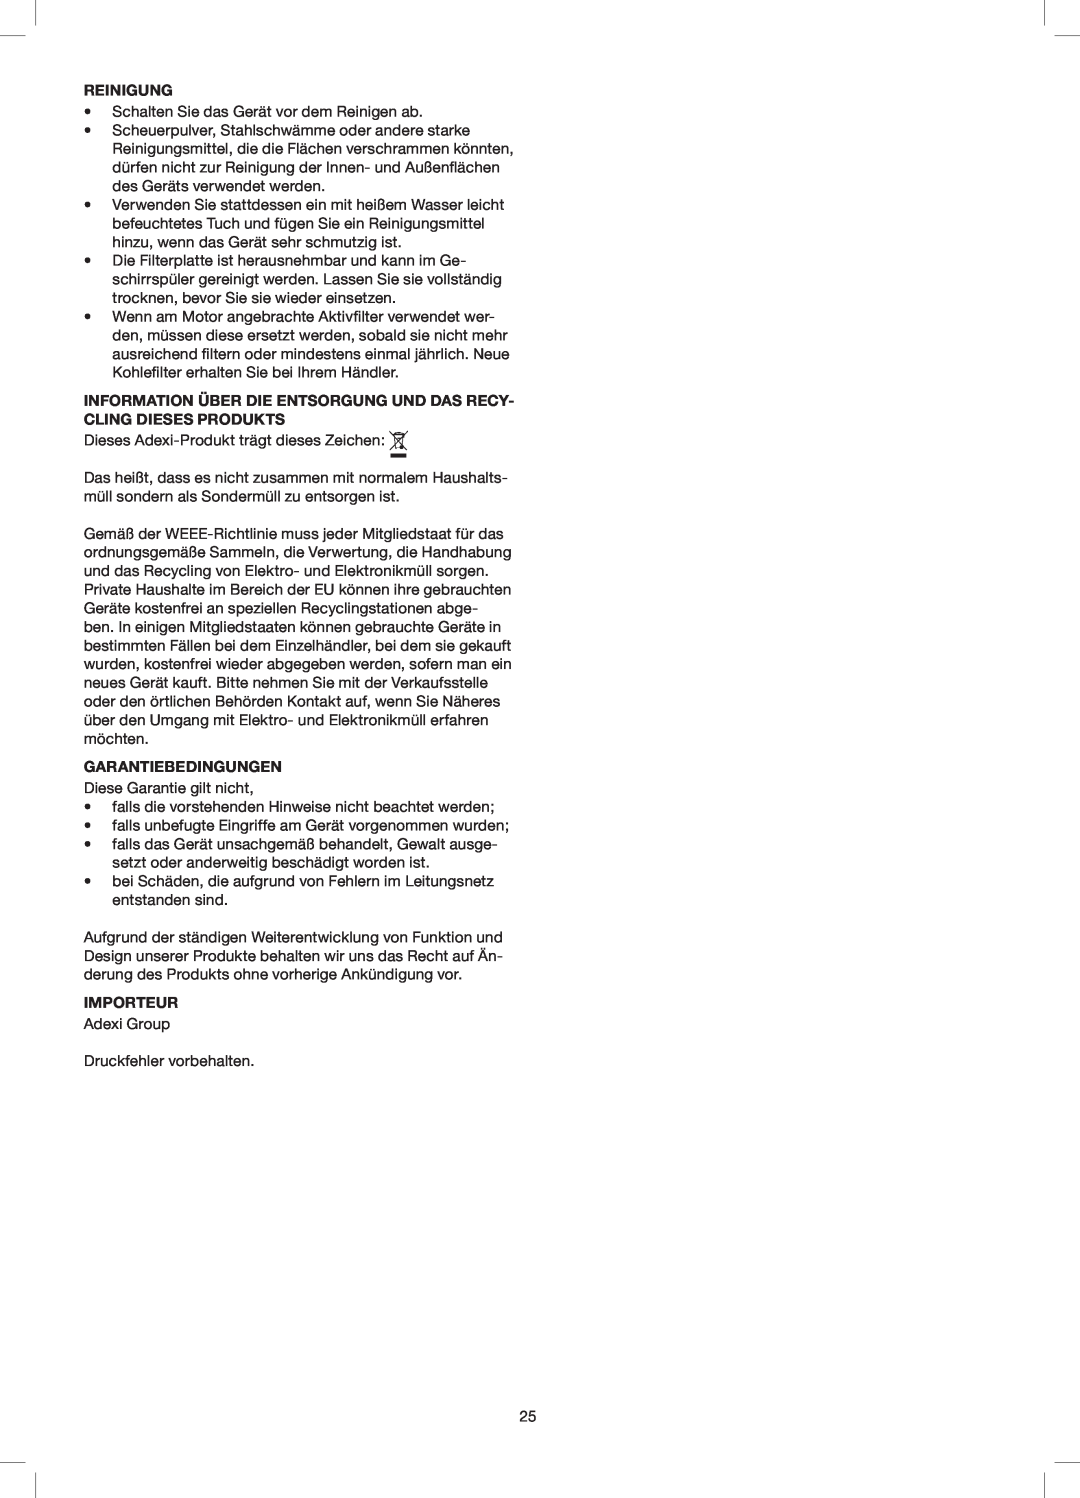 Melissa 258-014 manual Reinigung, Information Über Die Entsorgung Und Das Recy- Cling Dieses Produkts, Garantiebedingungen 